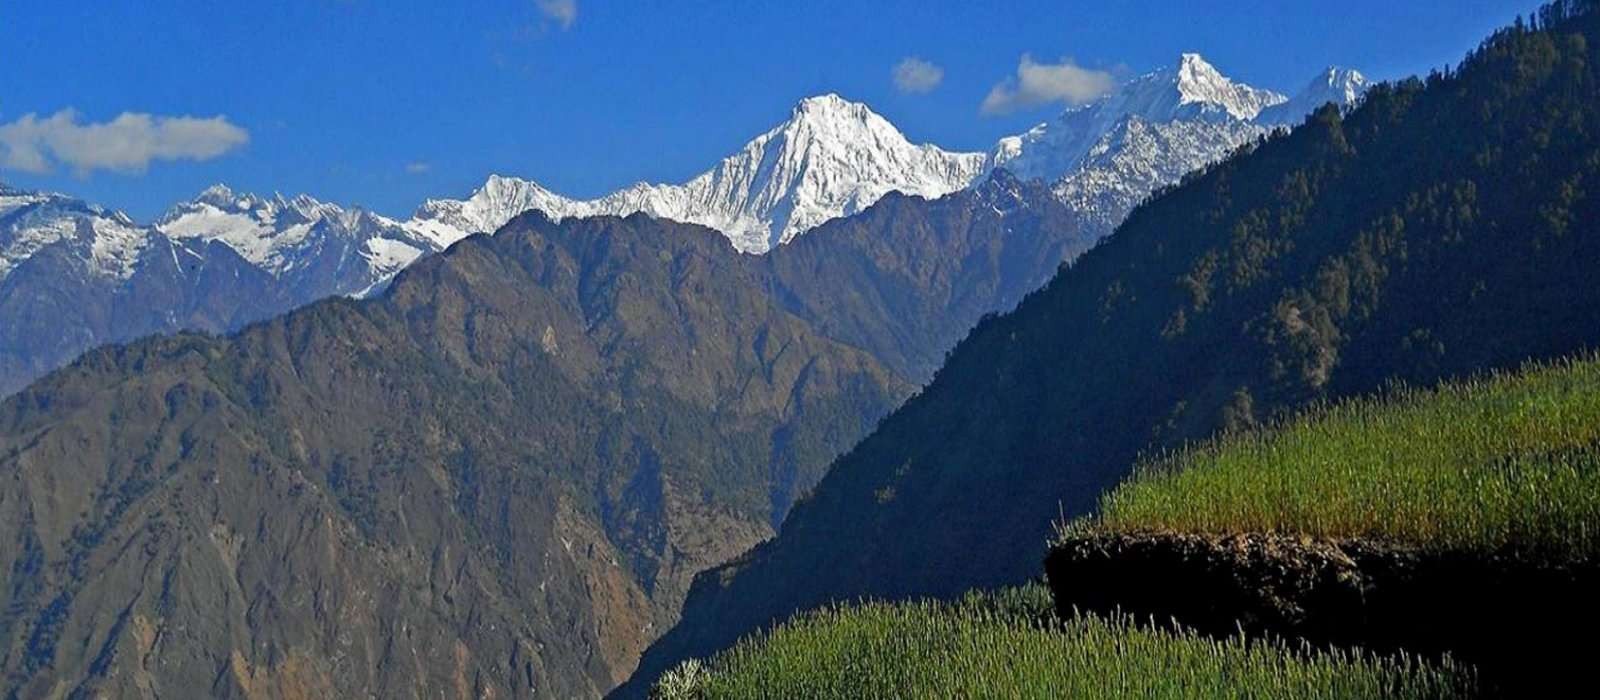 Ganesh Himal Trek – 15 days